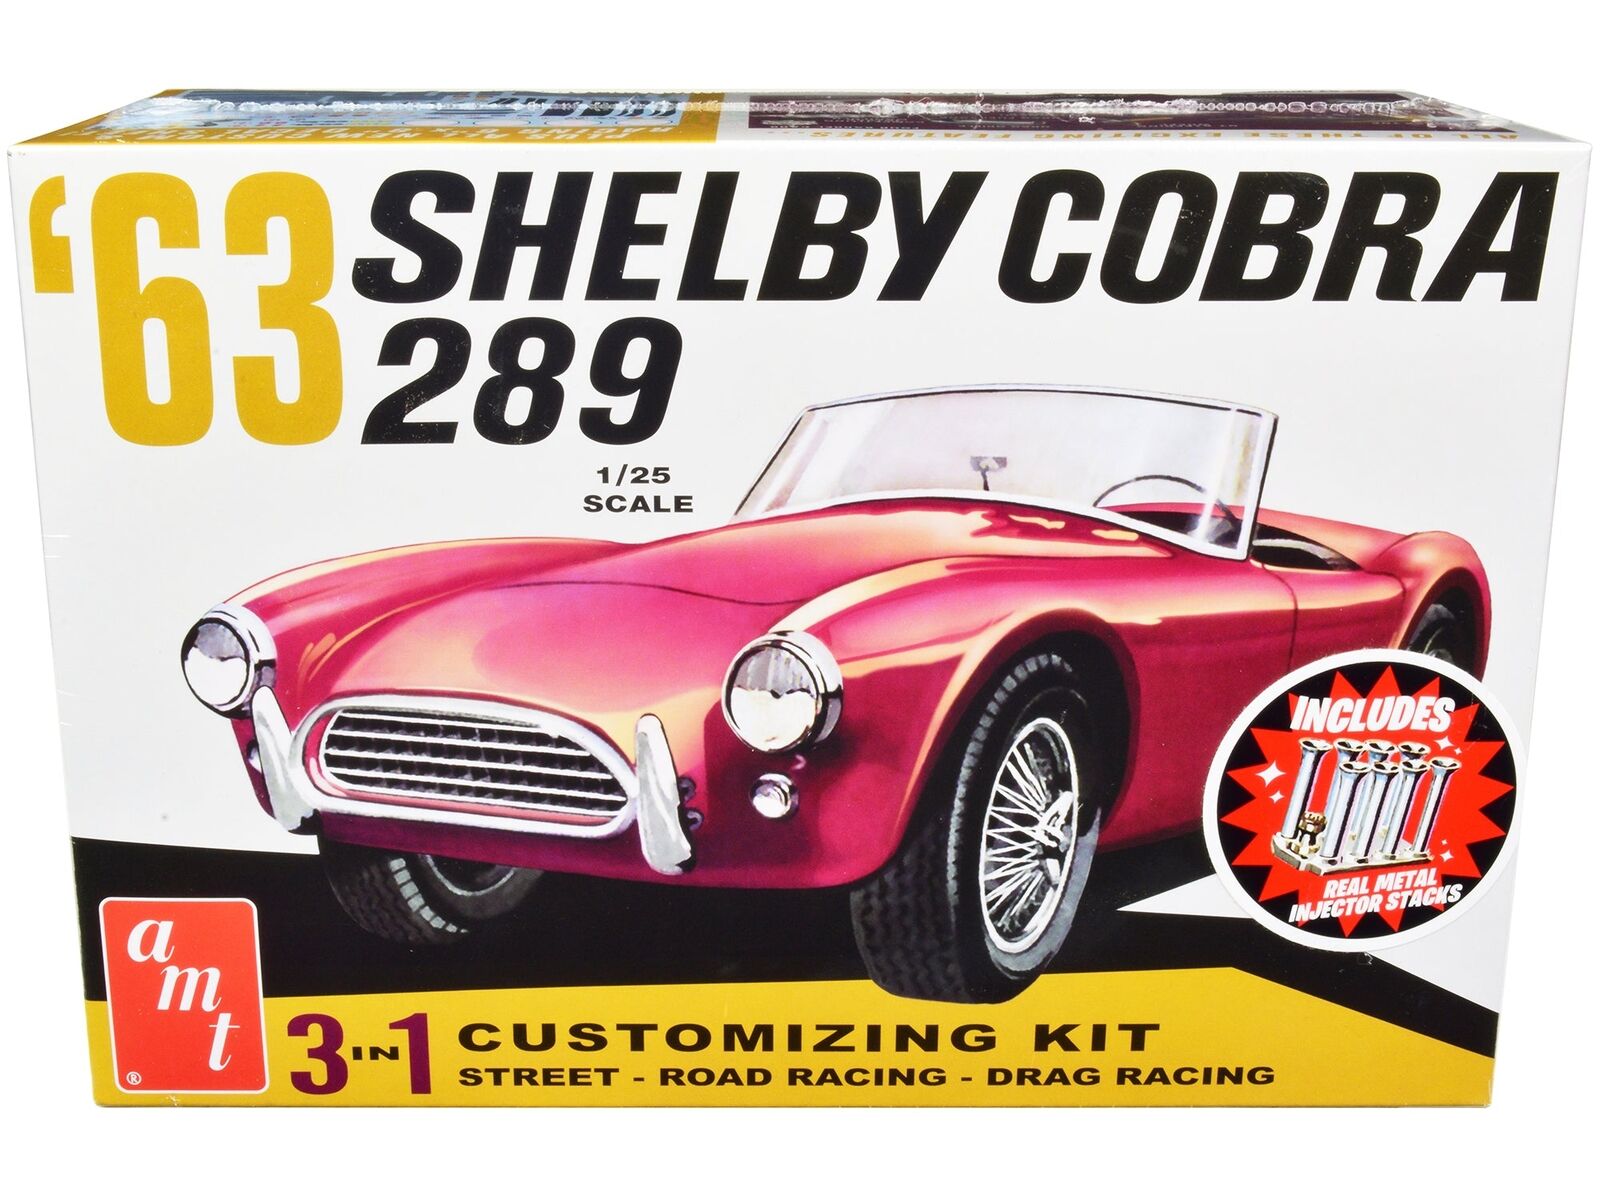 Skill 2 Model Kit 1963 Shelby Cobra 289 3 in 1 Kit 1/25 Scale Model